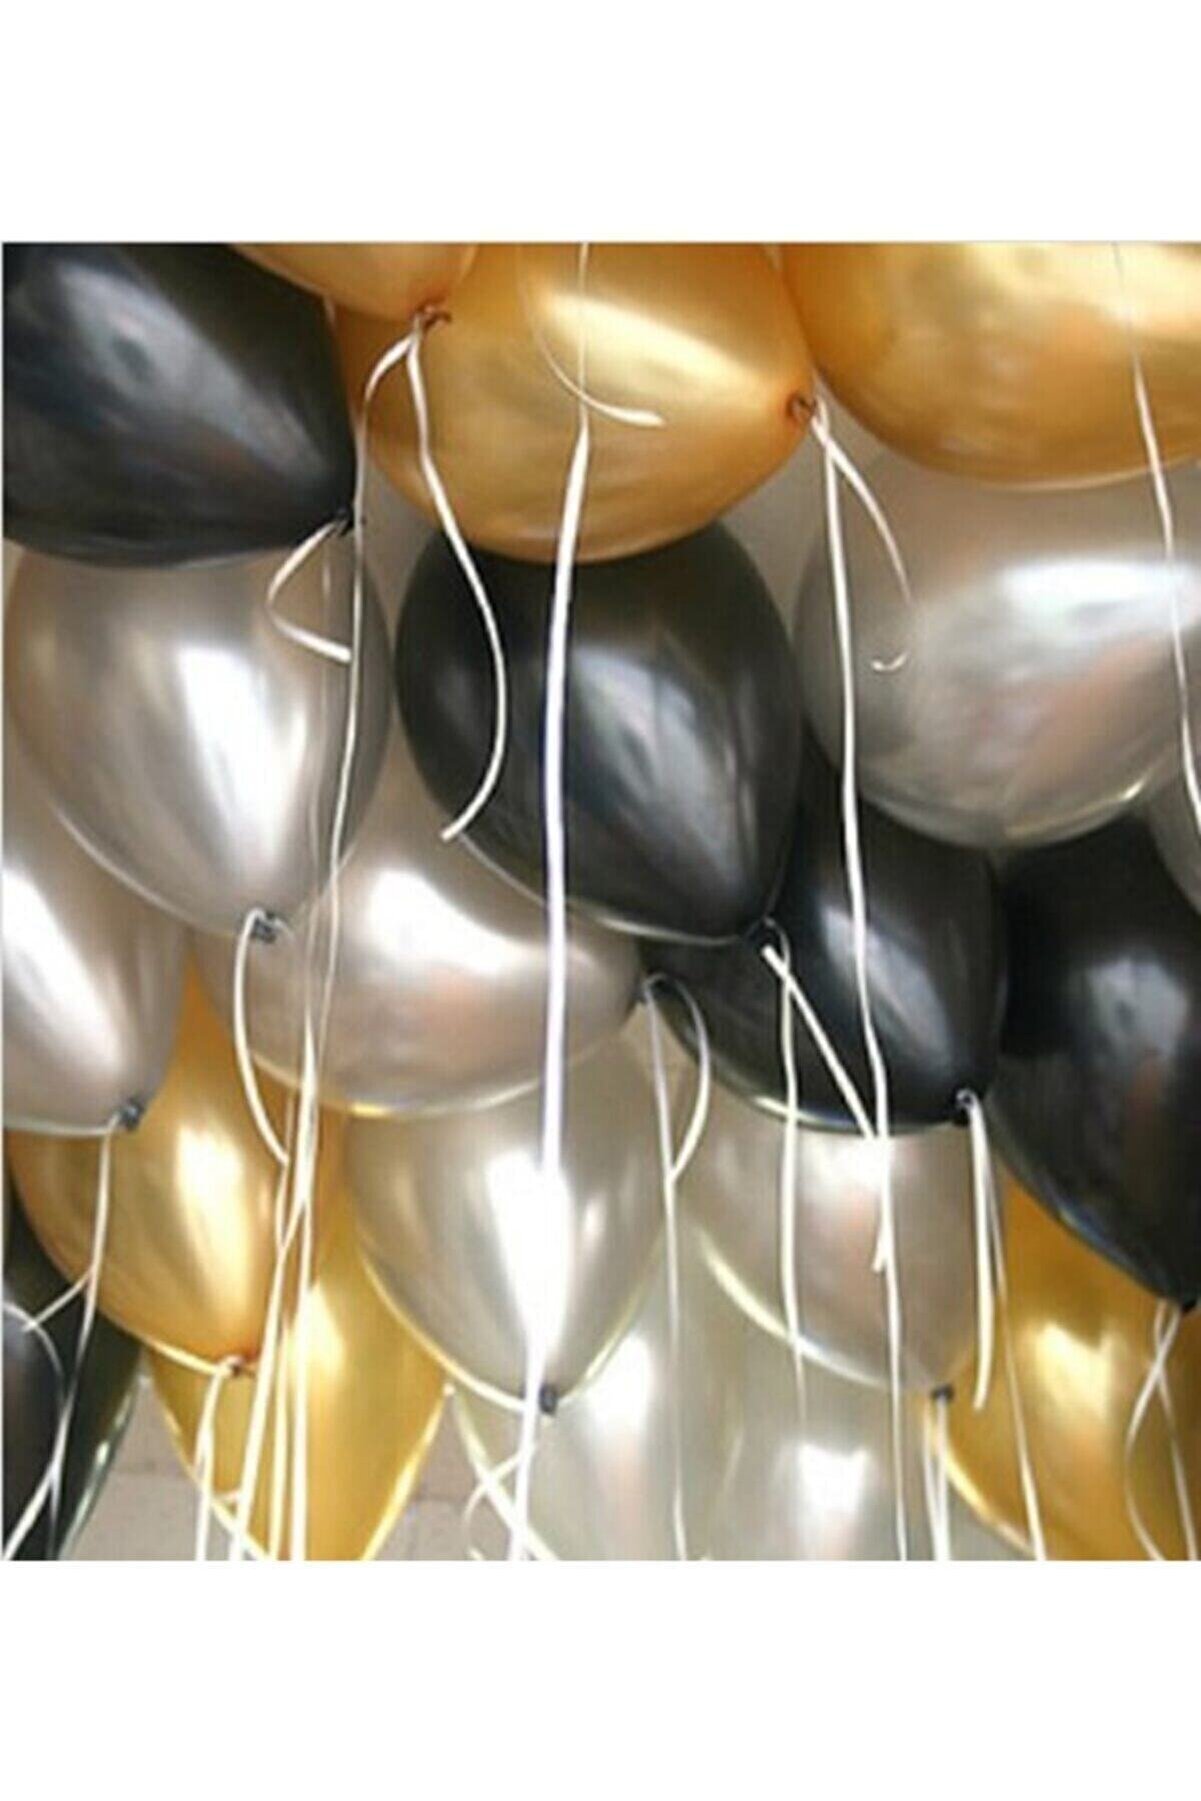 Deniz Party Store Metalik Balon 12 " Inç 25 adet Metalik Gri Gold Pastel Siyah Set